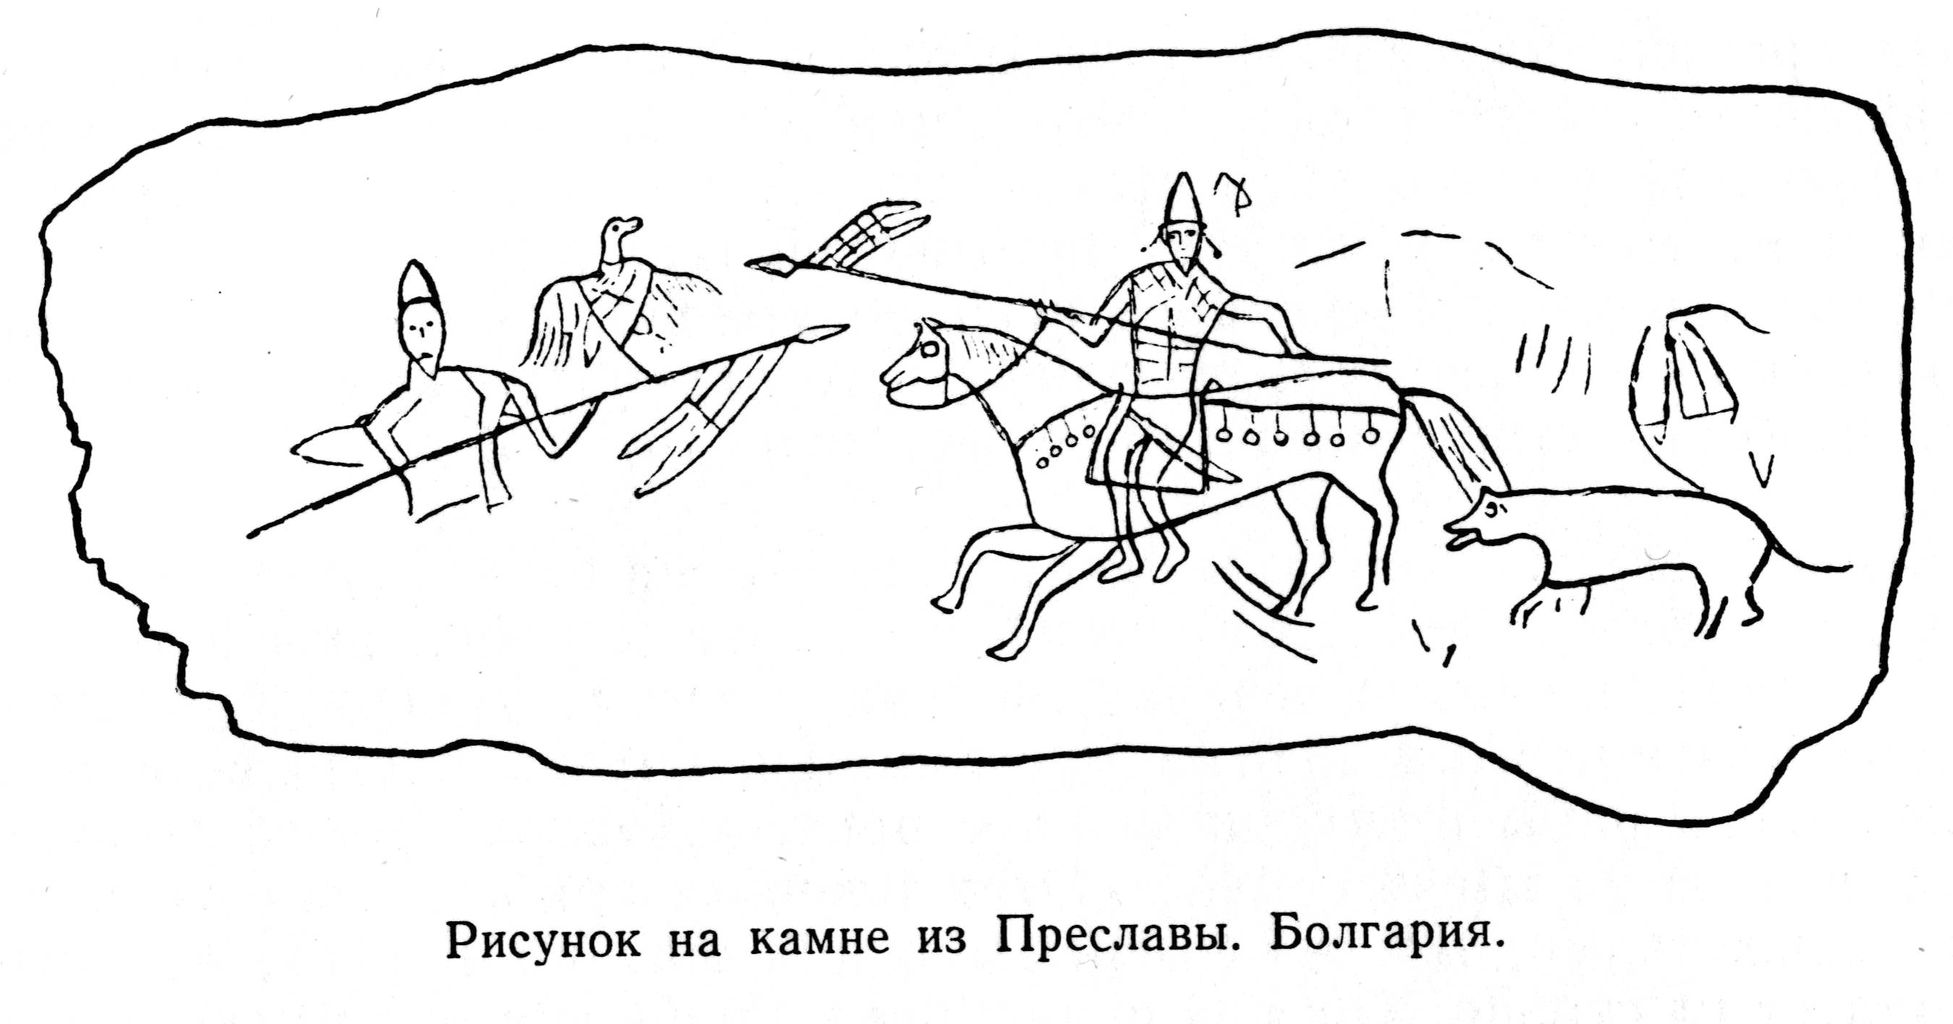 Рисунок на камне из Преславы. Болгария